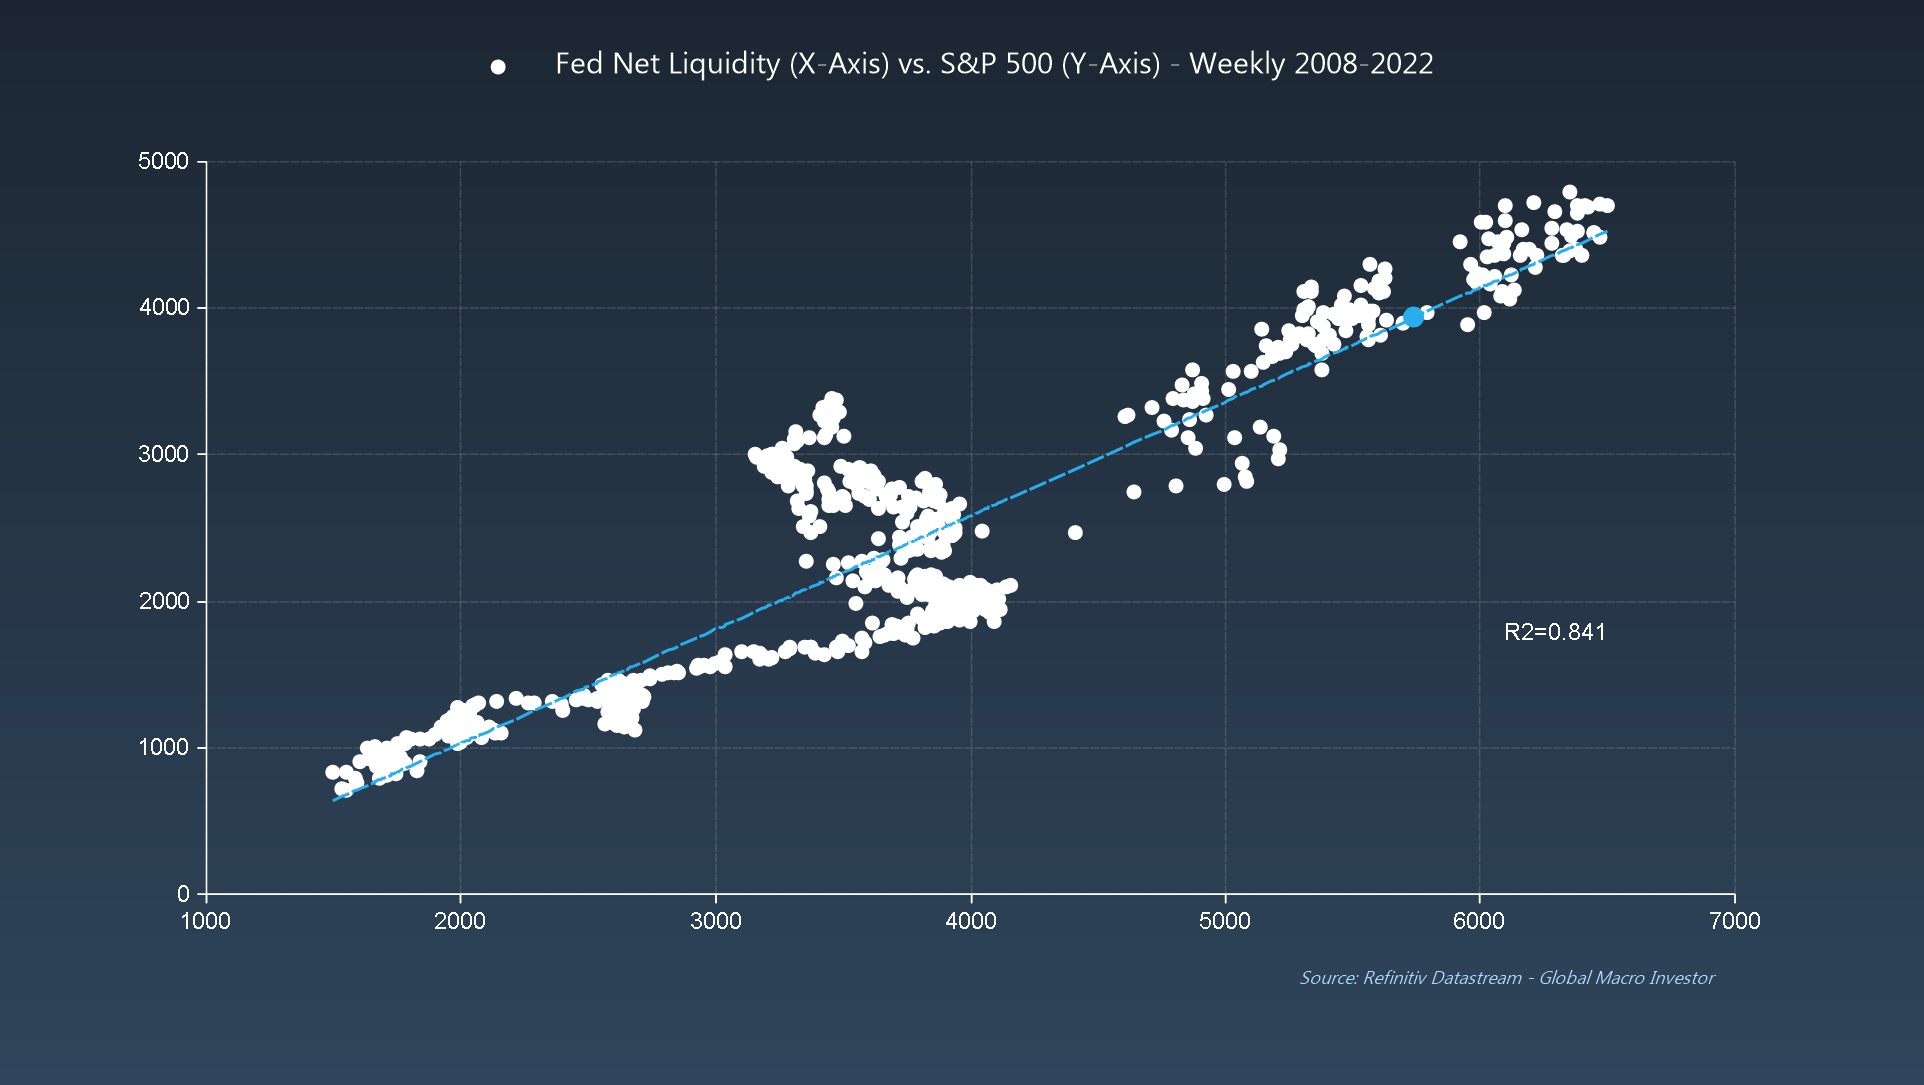 Fed Net Liquidity vs. S&P 500 Weekly